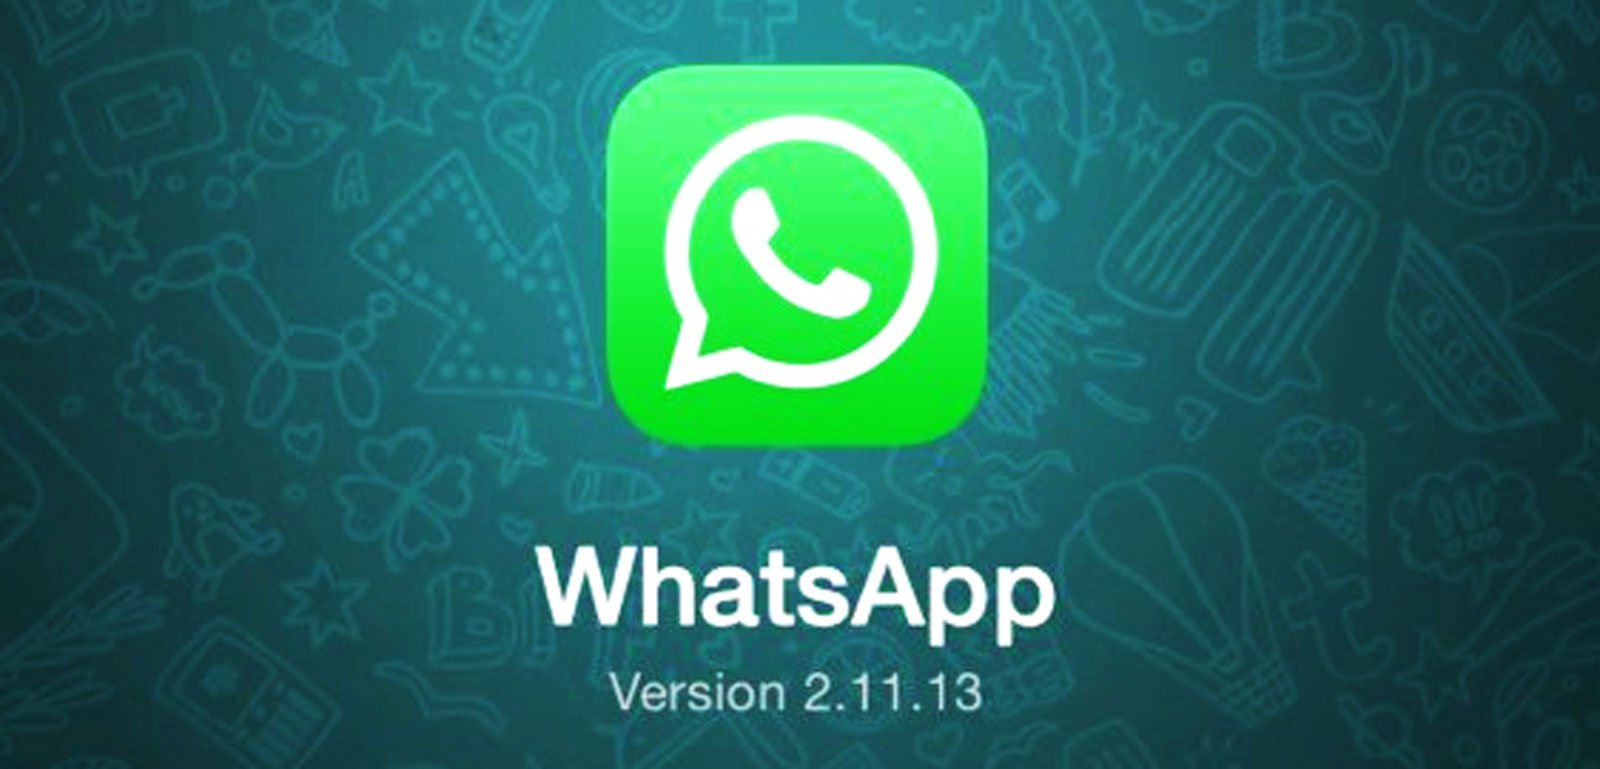 WhatsApp: Wann kommt WhatsApp Update für iPhone 6 und iPhone 6 Plus? 12